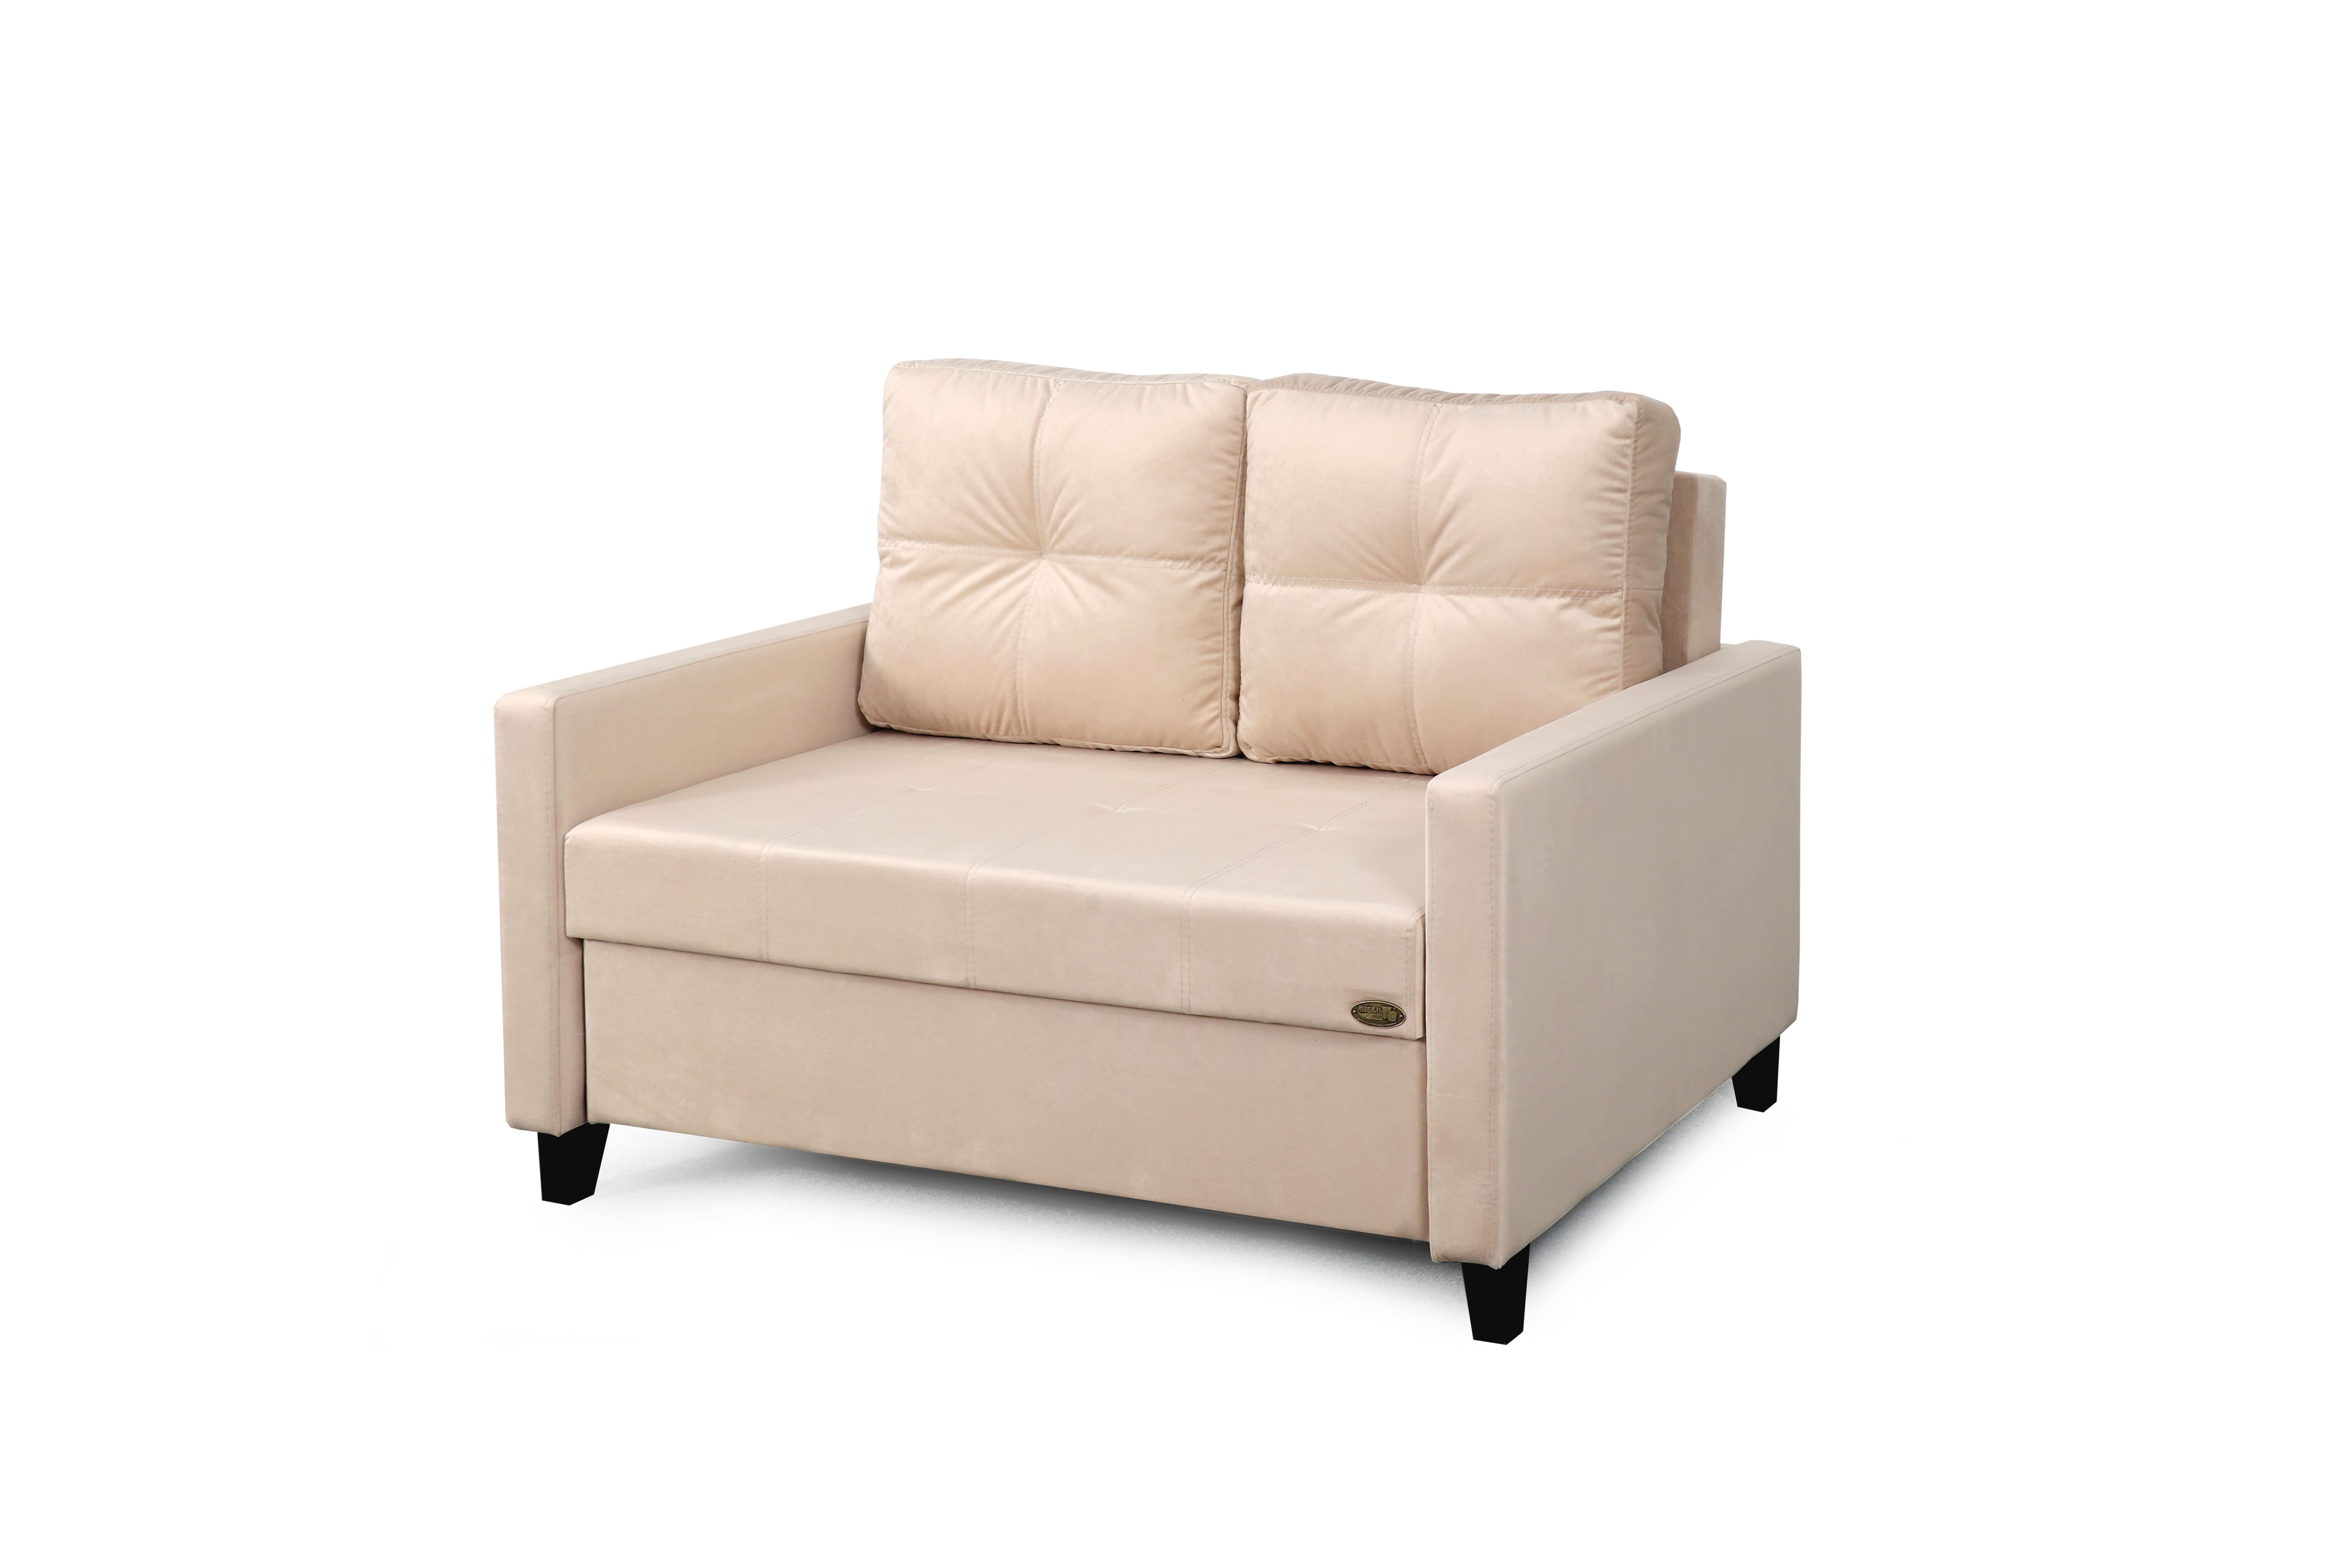 Джерси 1 - 1200 (БНП) диван-кровать СТАНДАРТ (вариант 4)